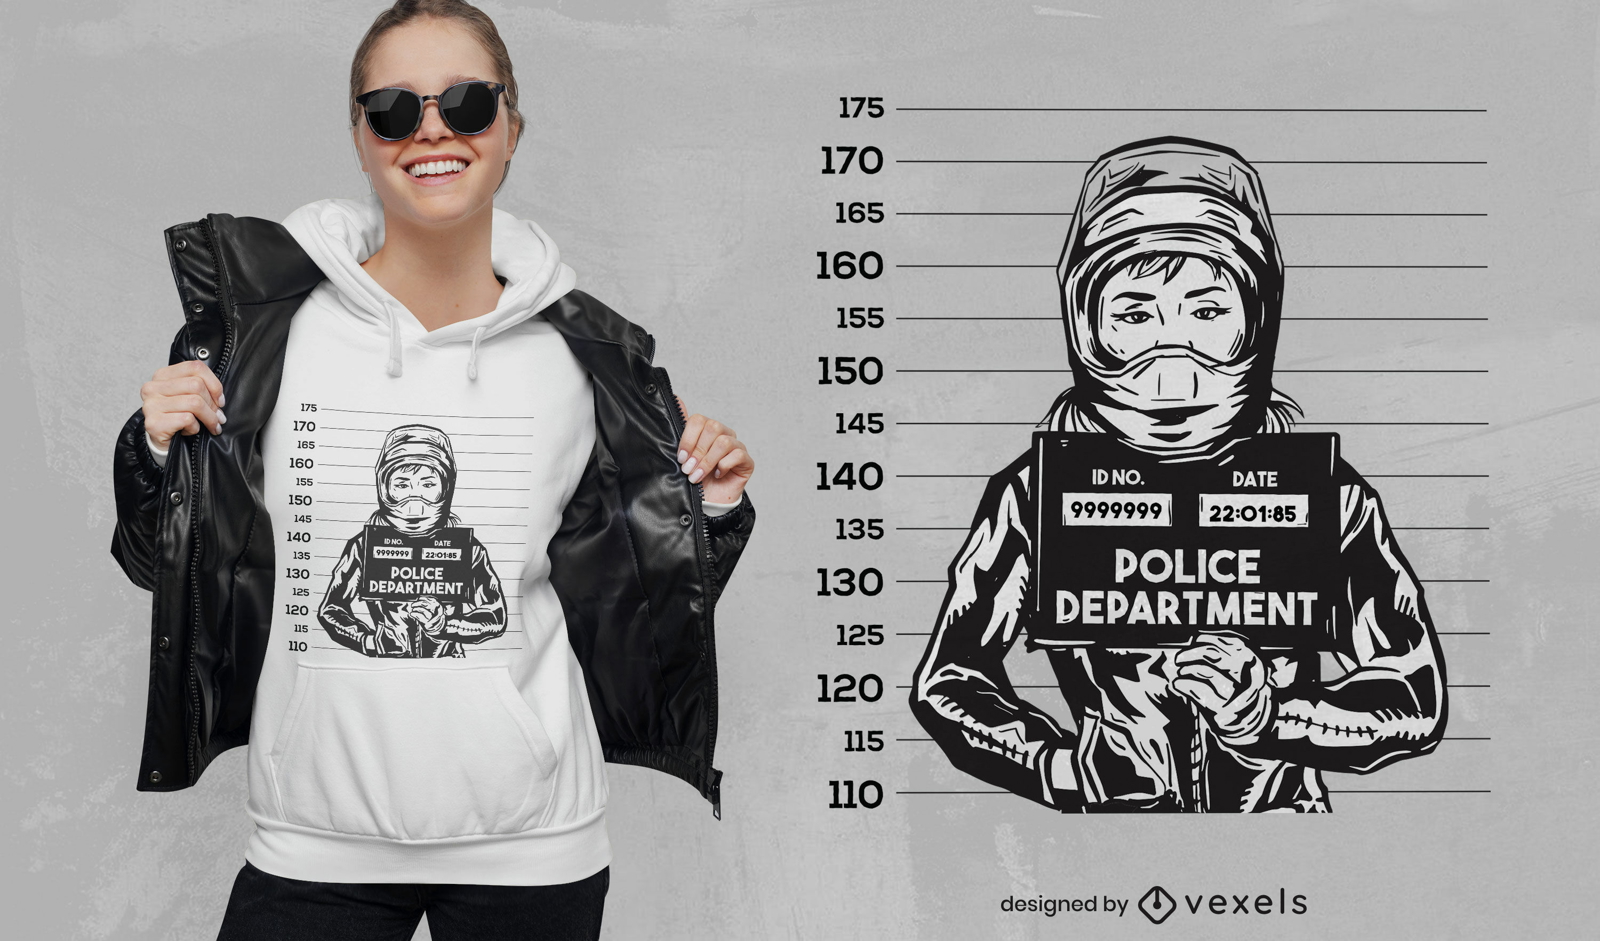 Diseño de camiseta con imagen de foto policial de mujer